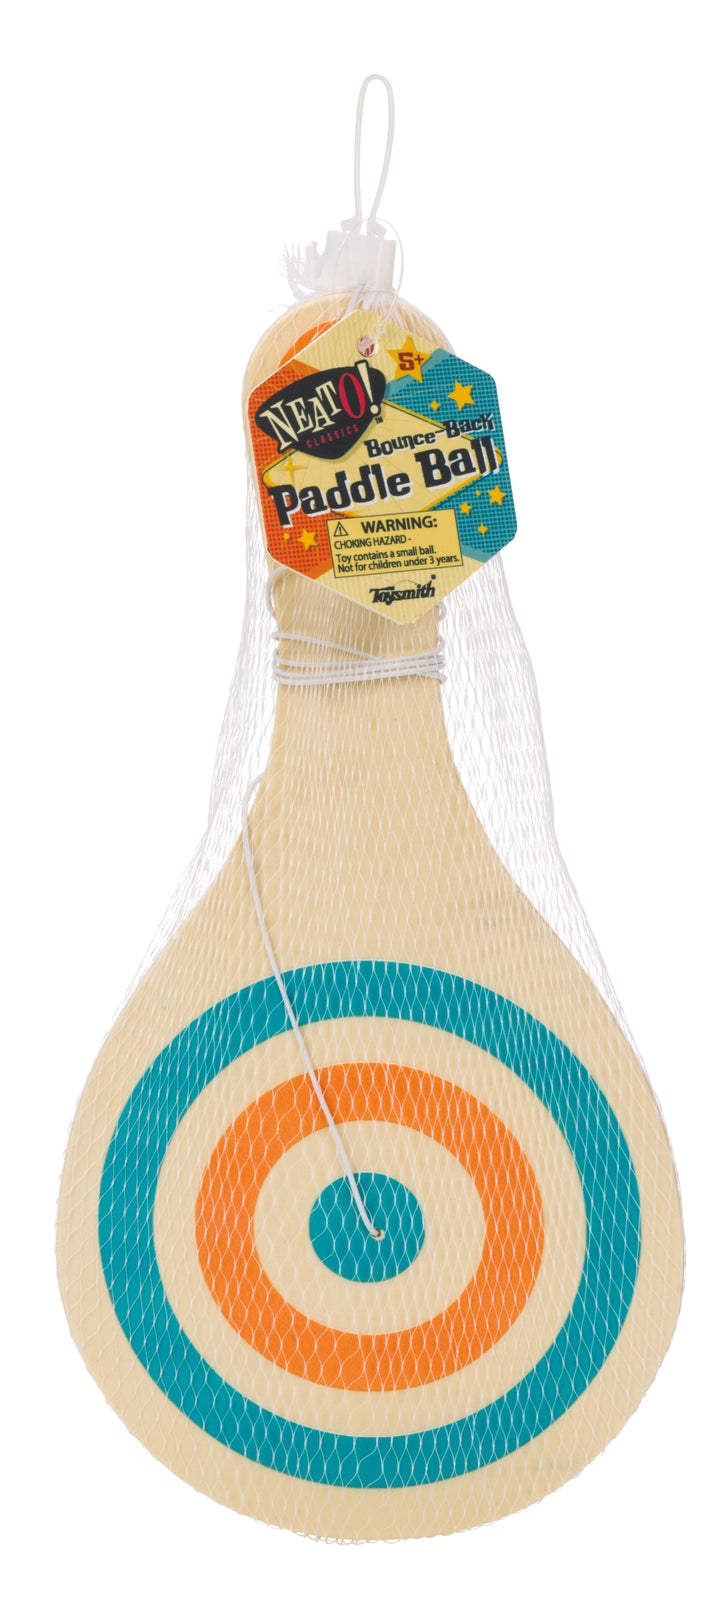 NeatO! Paddle Ball